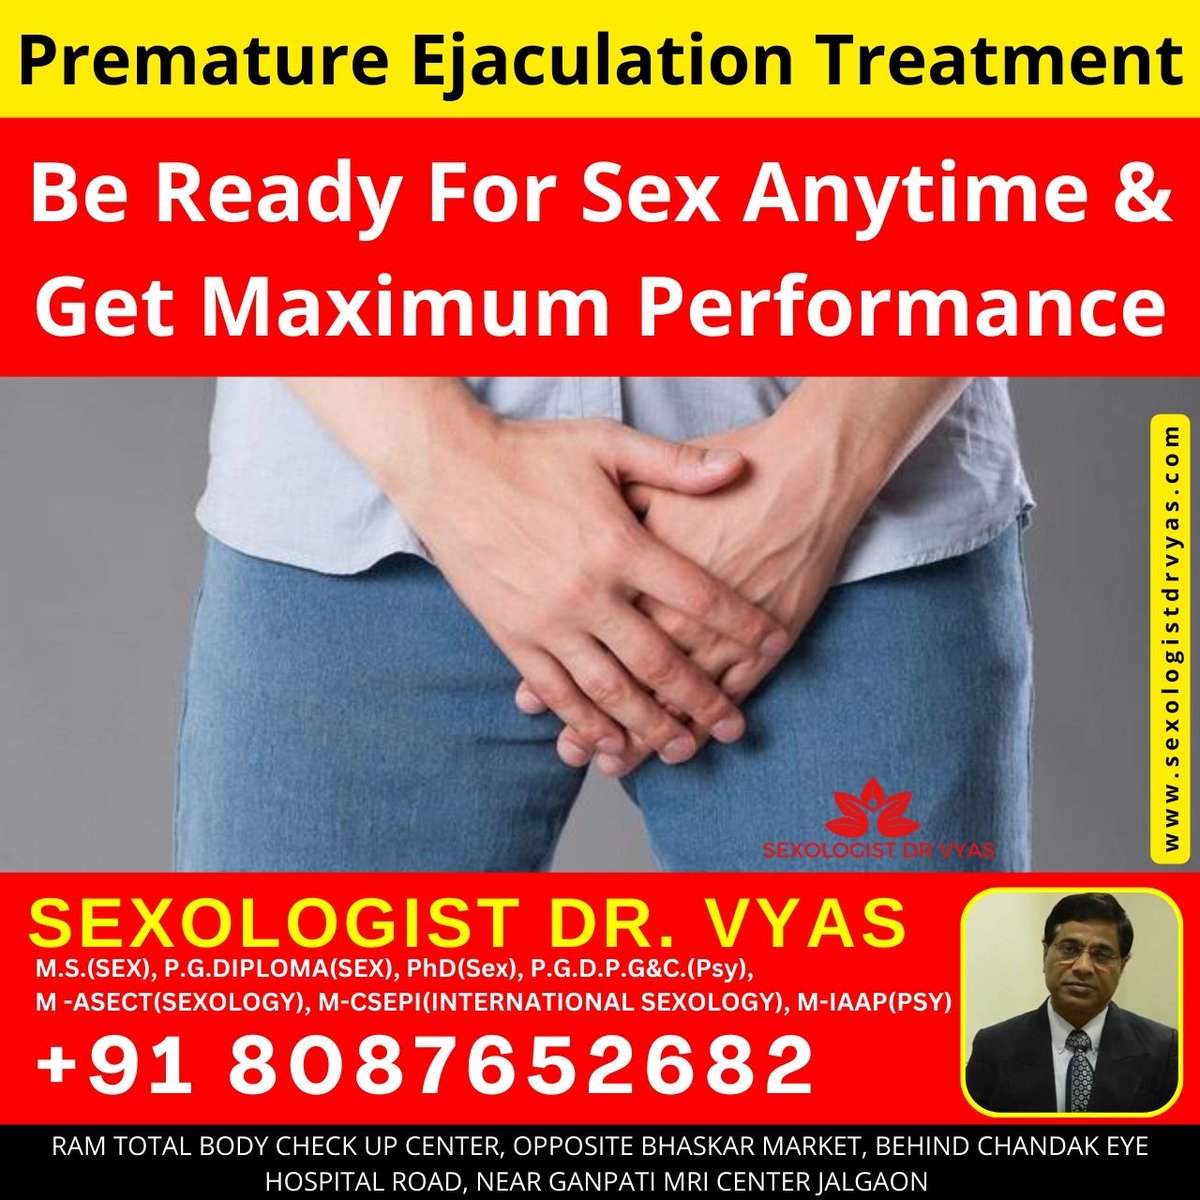 Premature Ejaculation Treatment
Consult with
Sexologist Dr. Vyas
Web : sexologistdrvyas.com
Call : +91 8087652682

#sexologist #sexologistdrvyas #drvyas #sexproblem #sexdoctor #sexologist